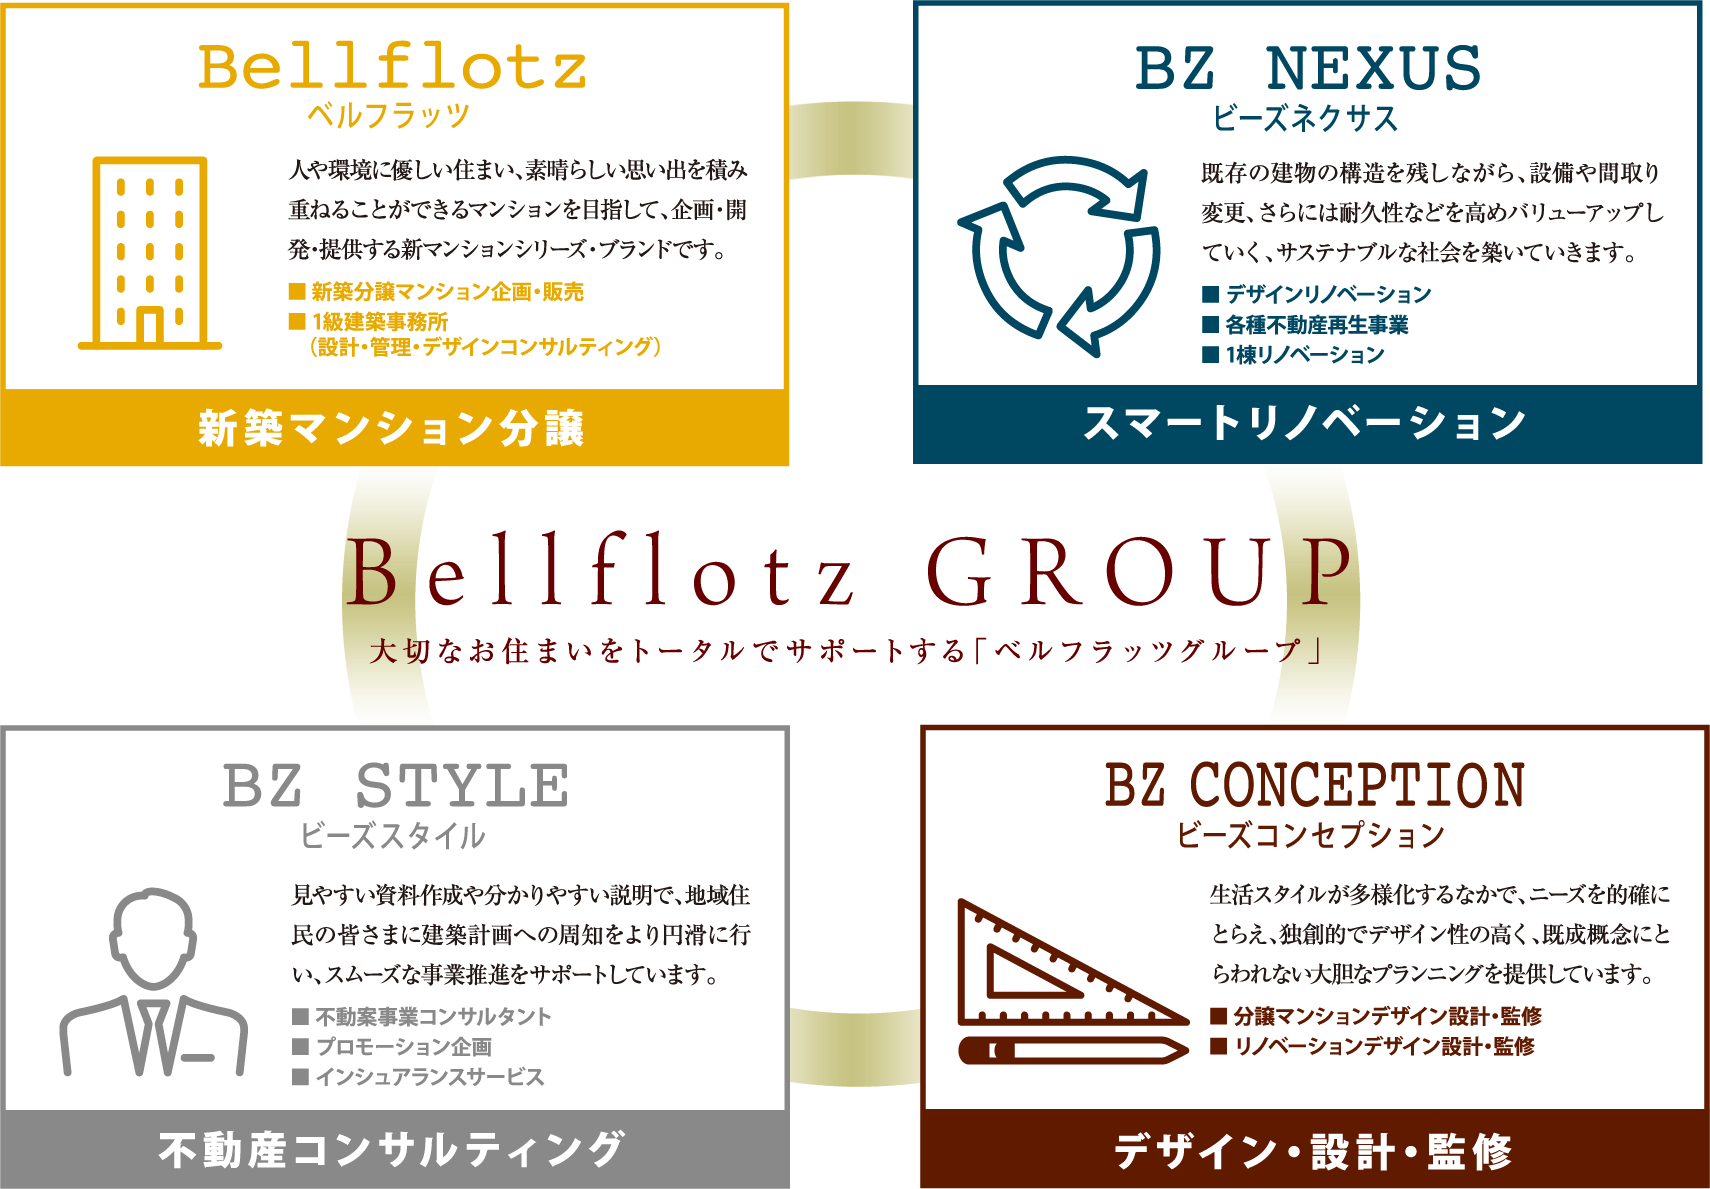 Bellf lotz GROUP